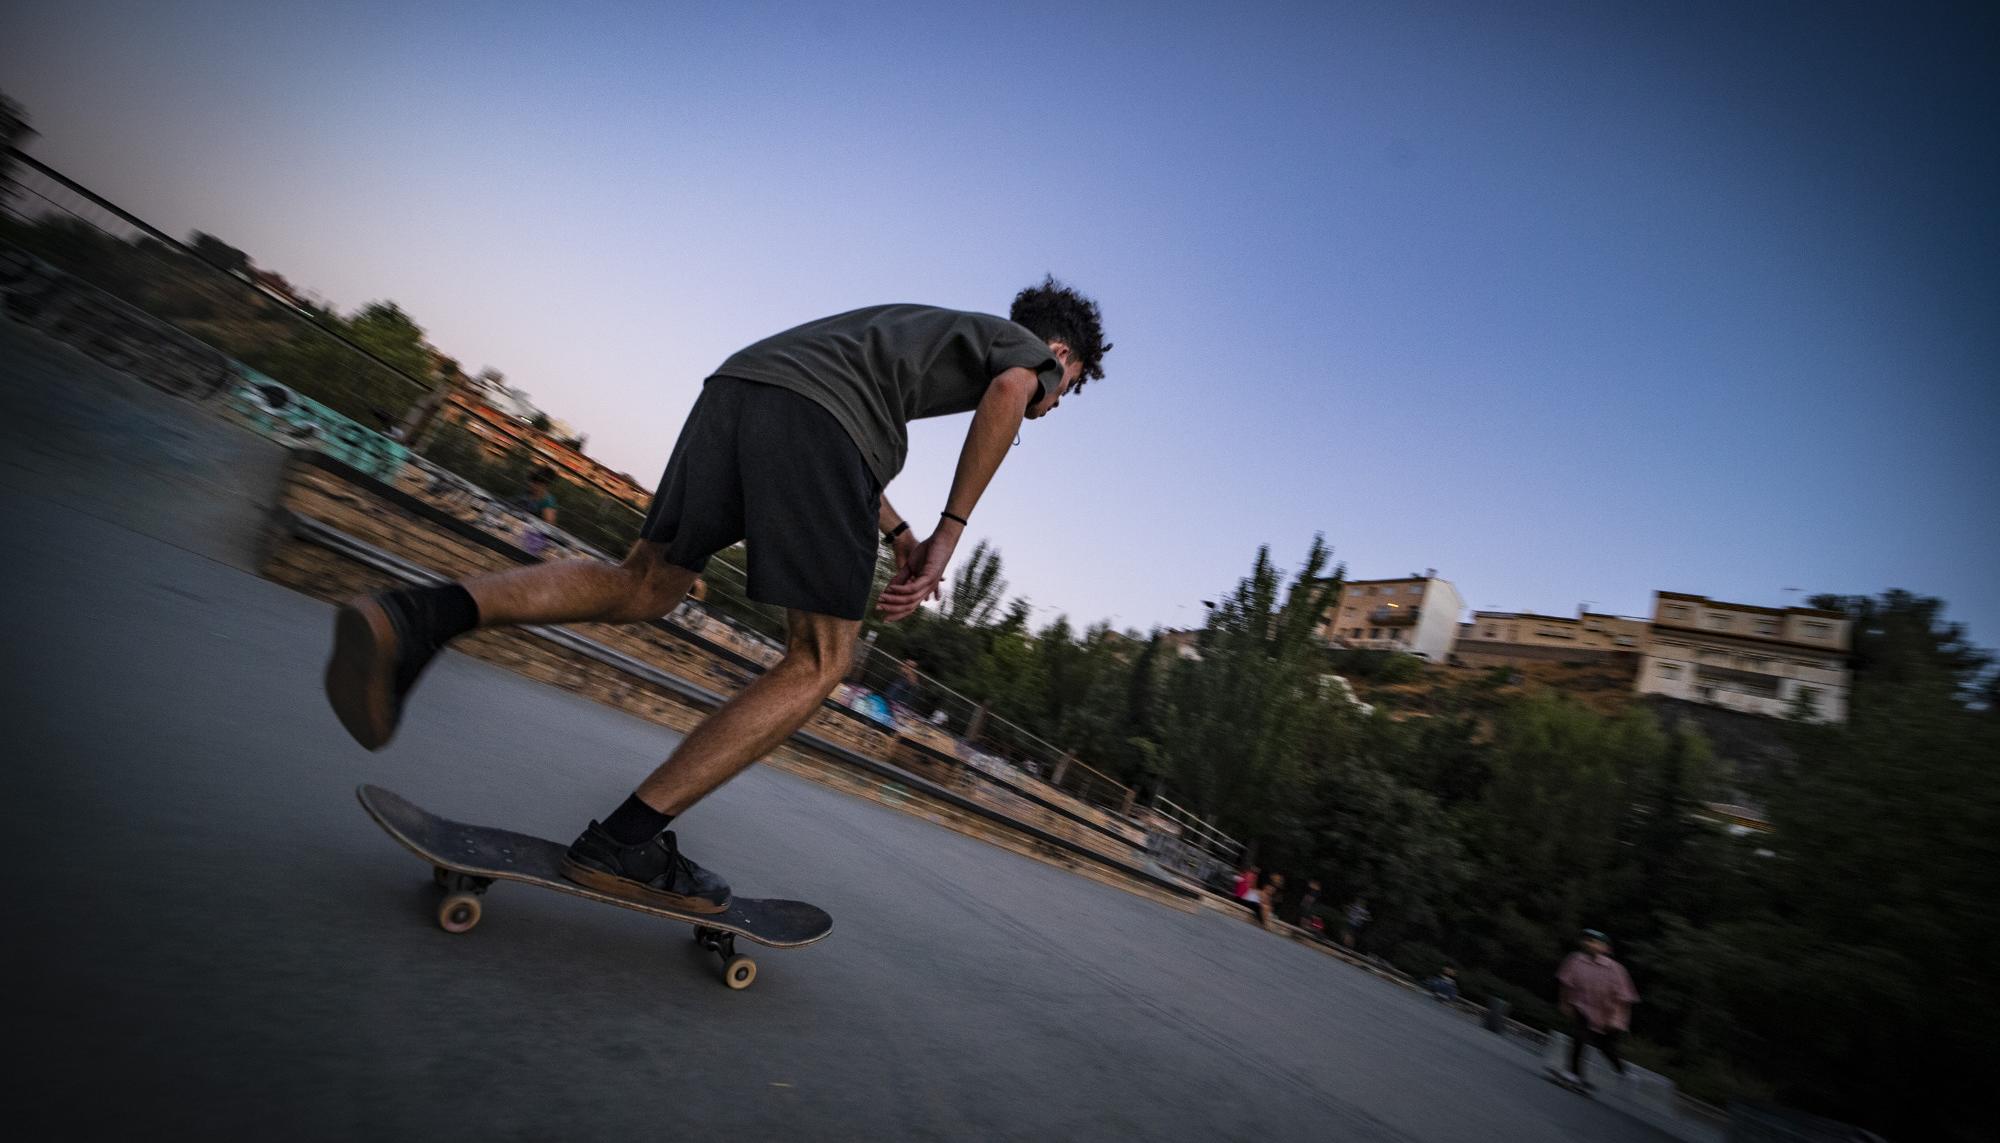 Skaters en el skatepark Bola de Oro, Granada - 10